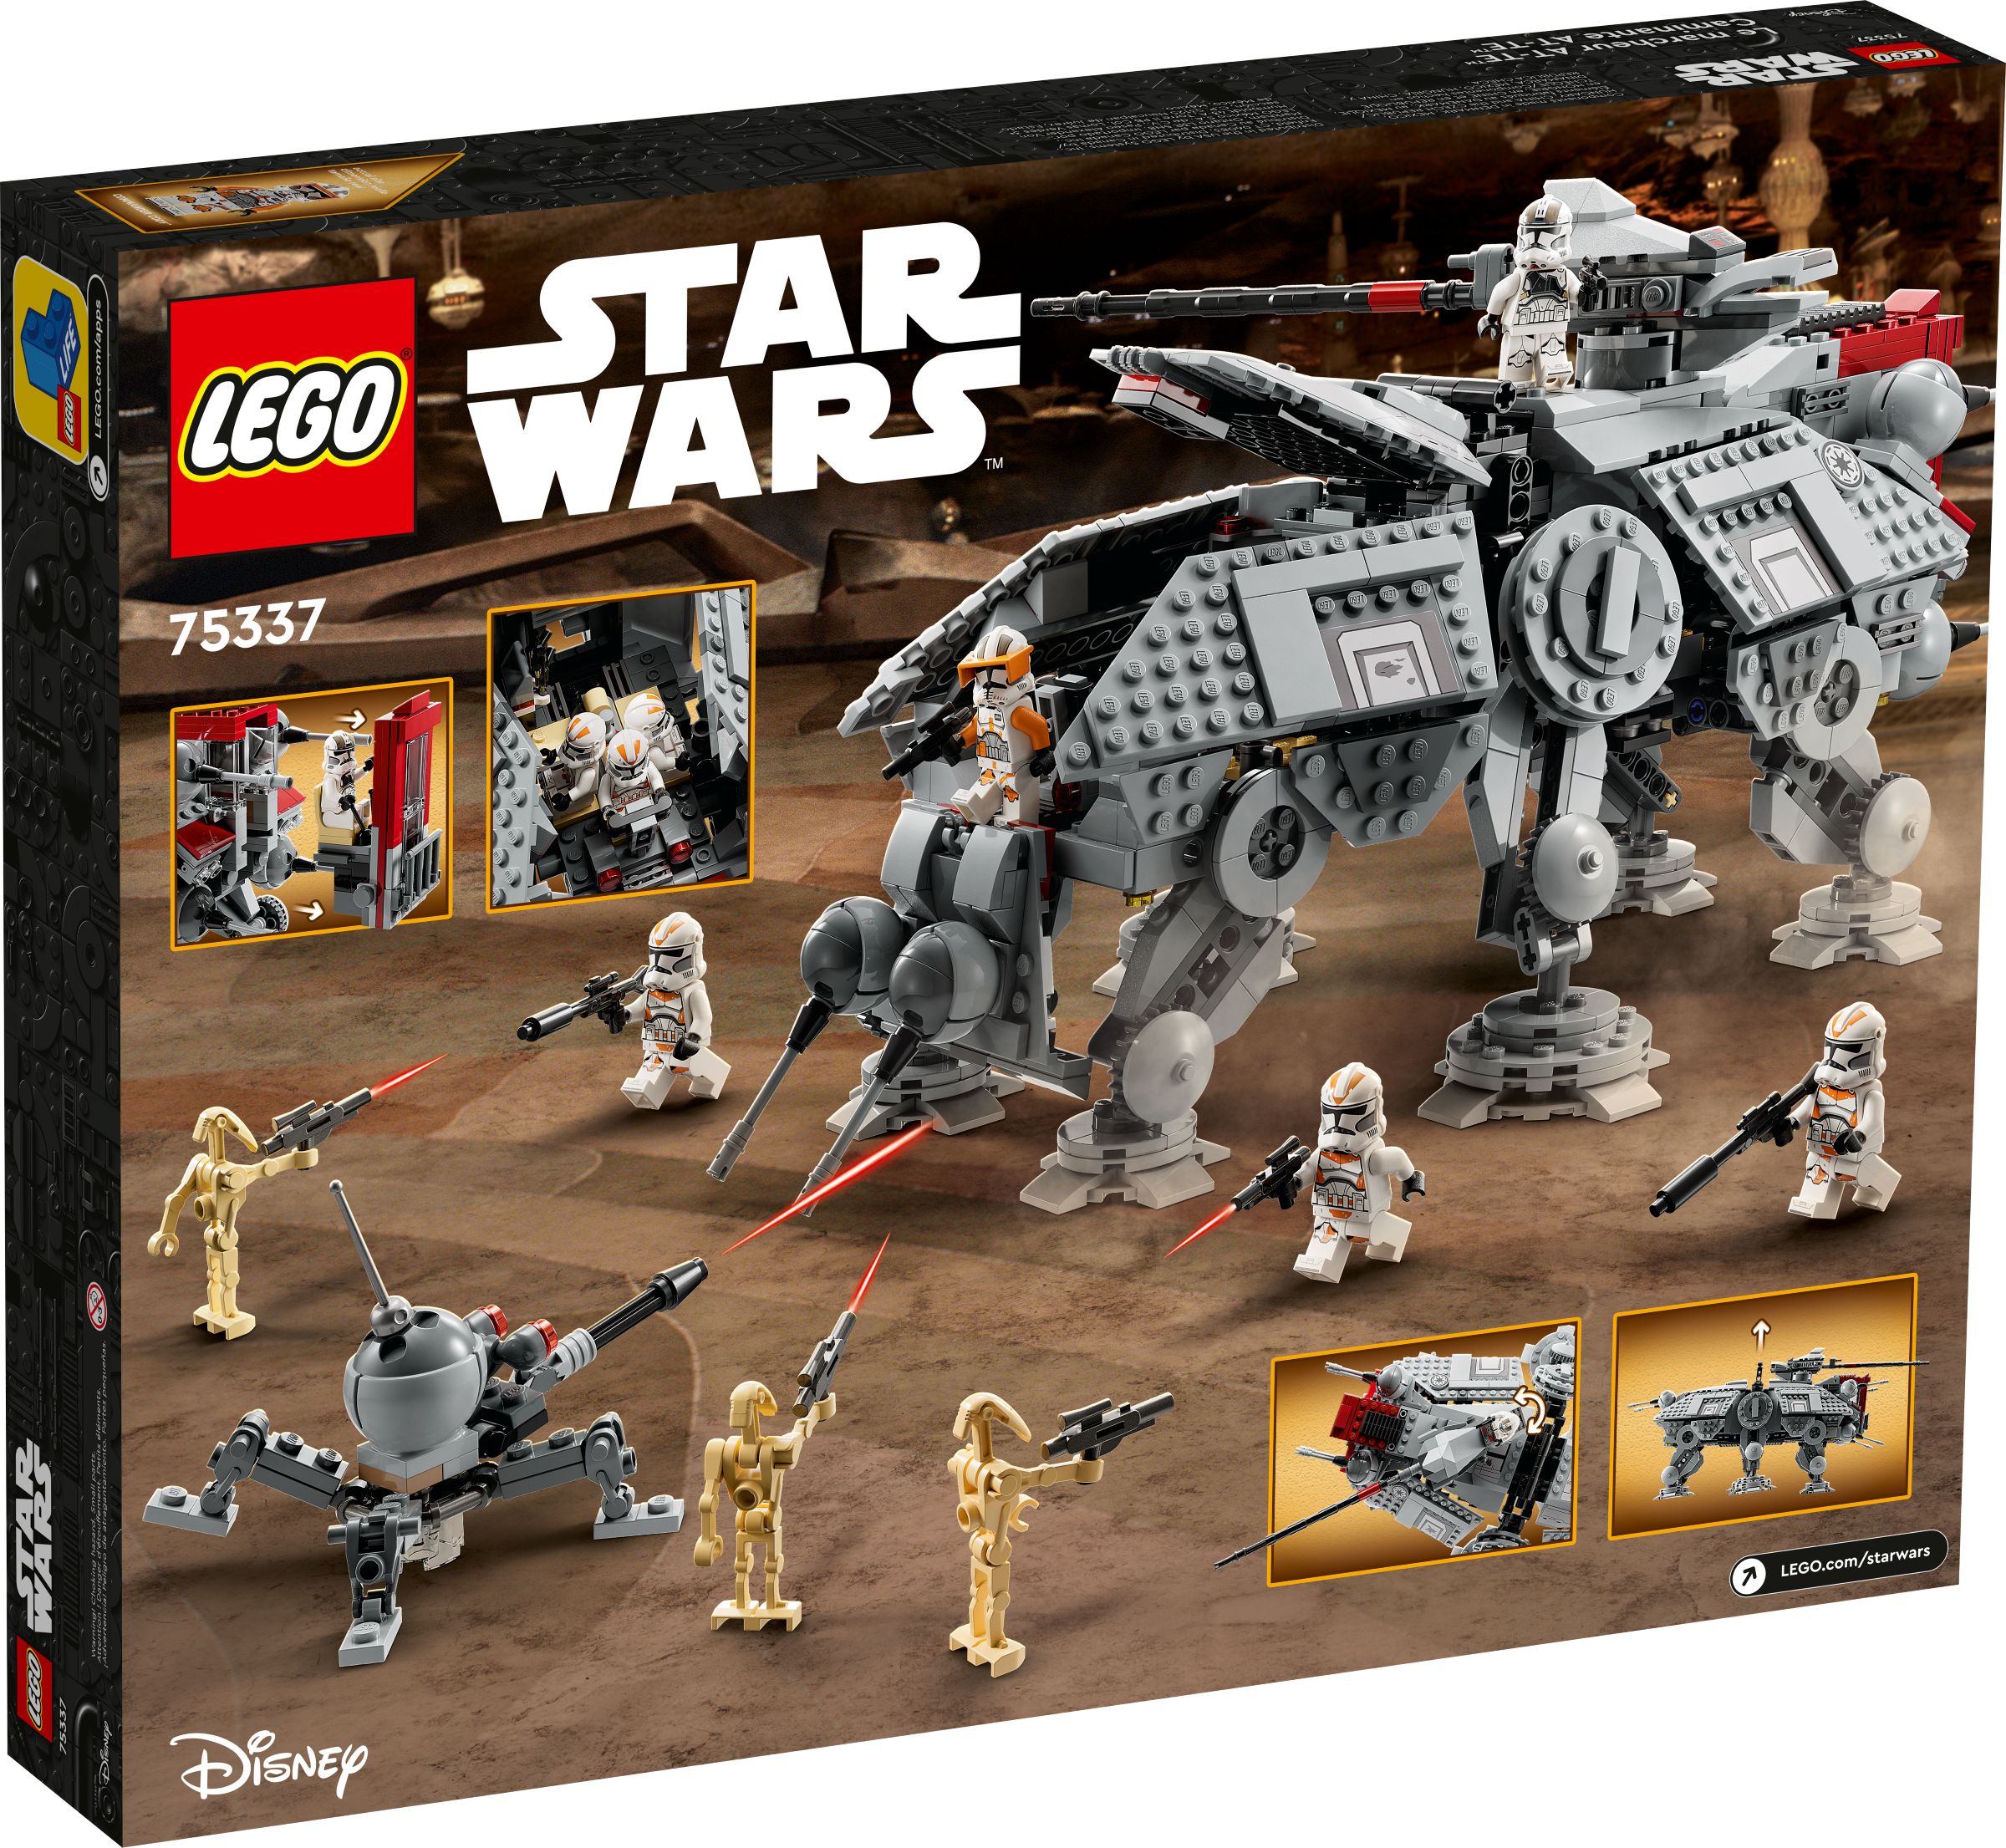 LEGO Star Wars 75337 AT-TE™ Walker LEGO_75337_alt7.jpg